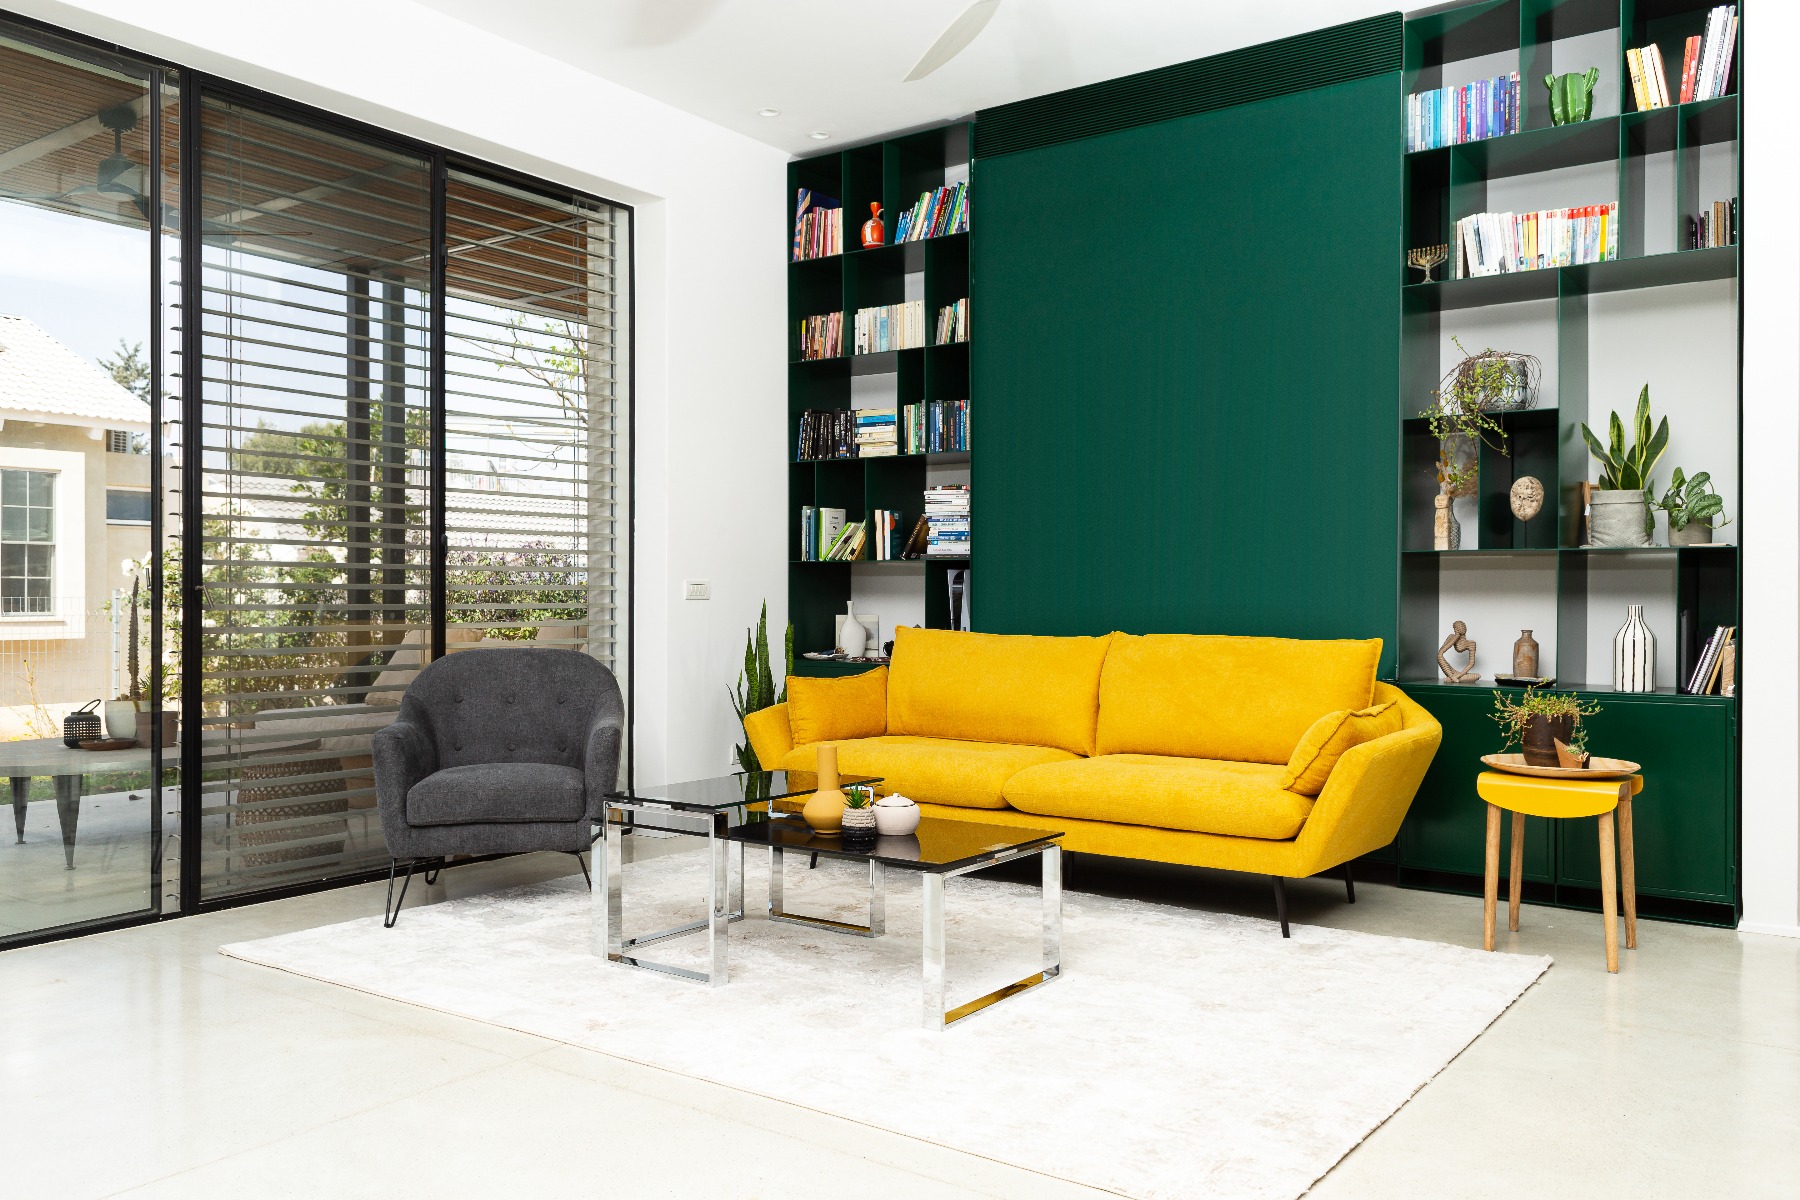 ספת CHILL  VIBE אפורה ויפה תלת מושבית בצבע צהוב בחדר מעוצב עם קיר ירוק ושטיח בצבע בז' וכורסת